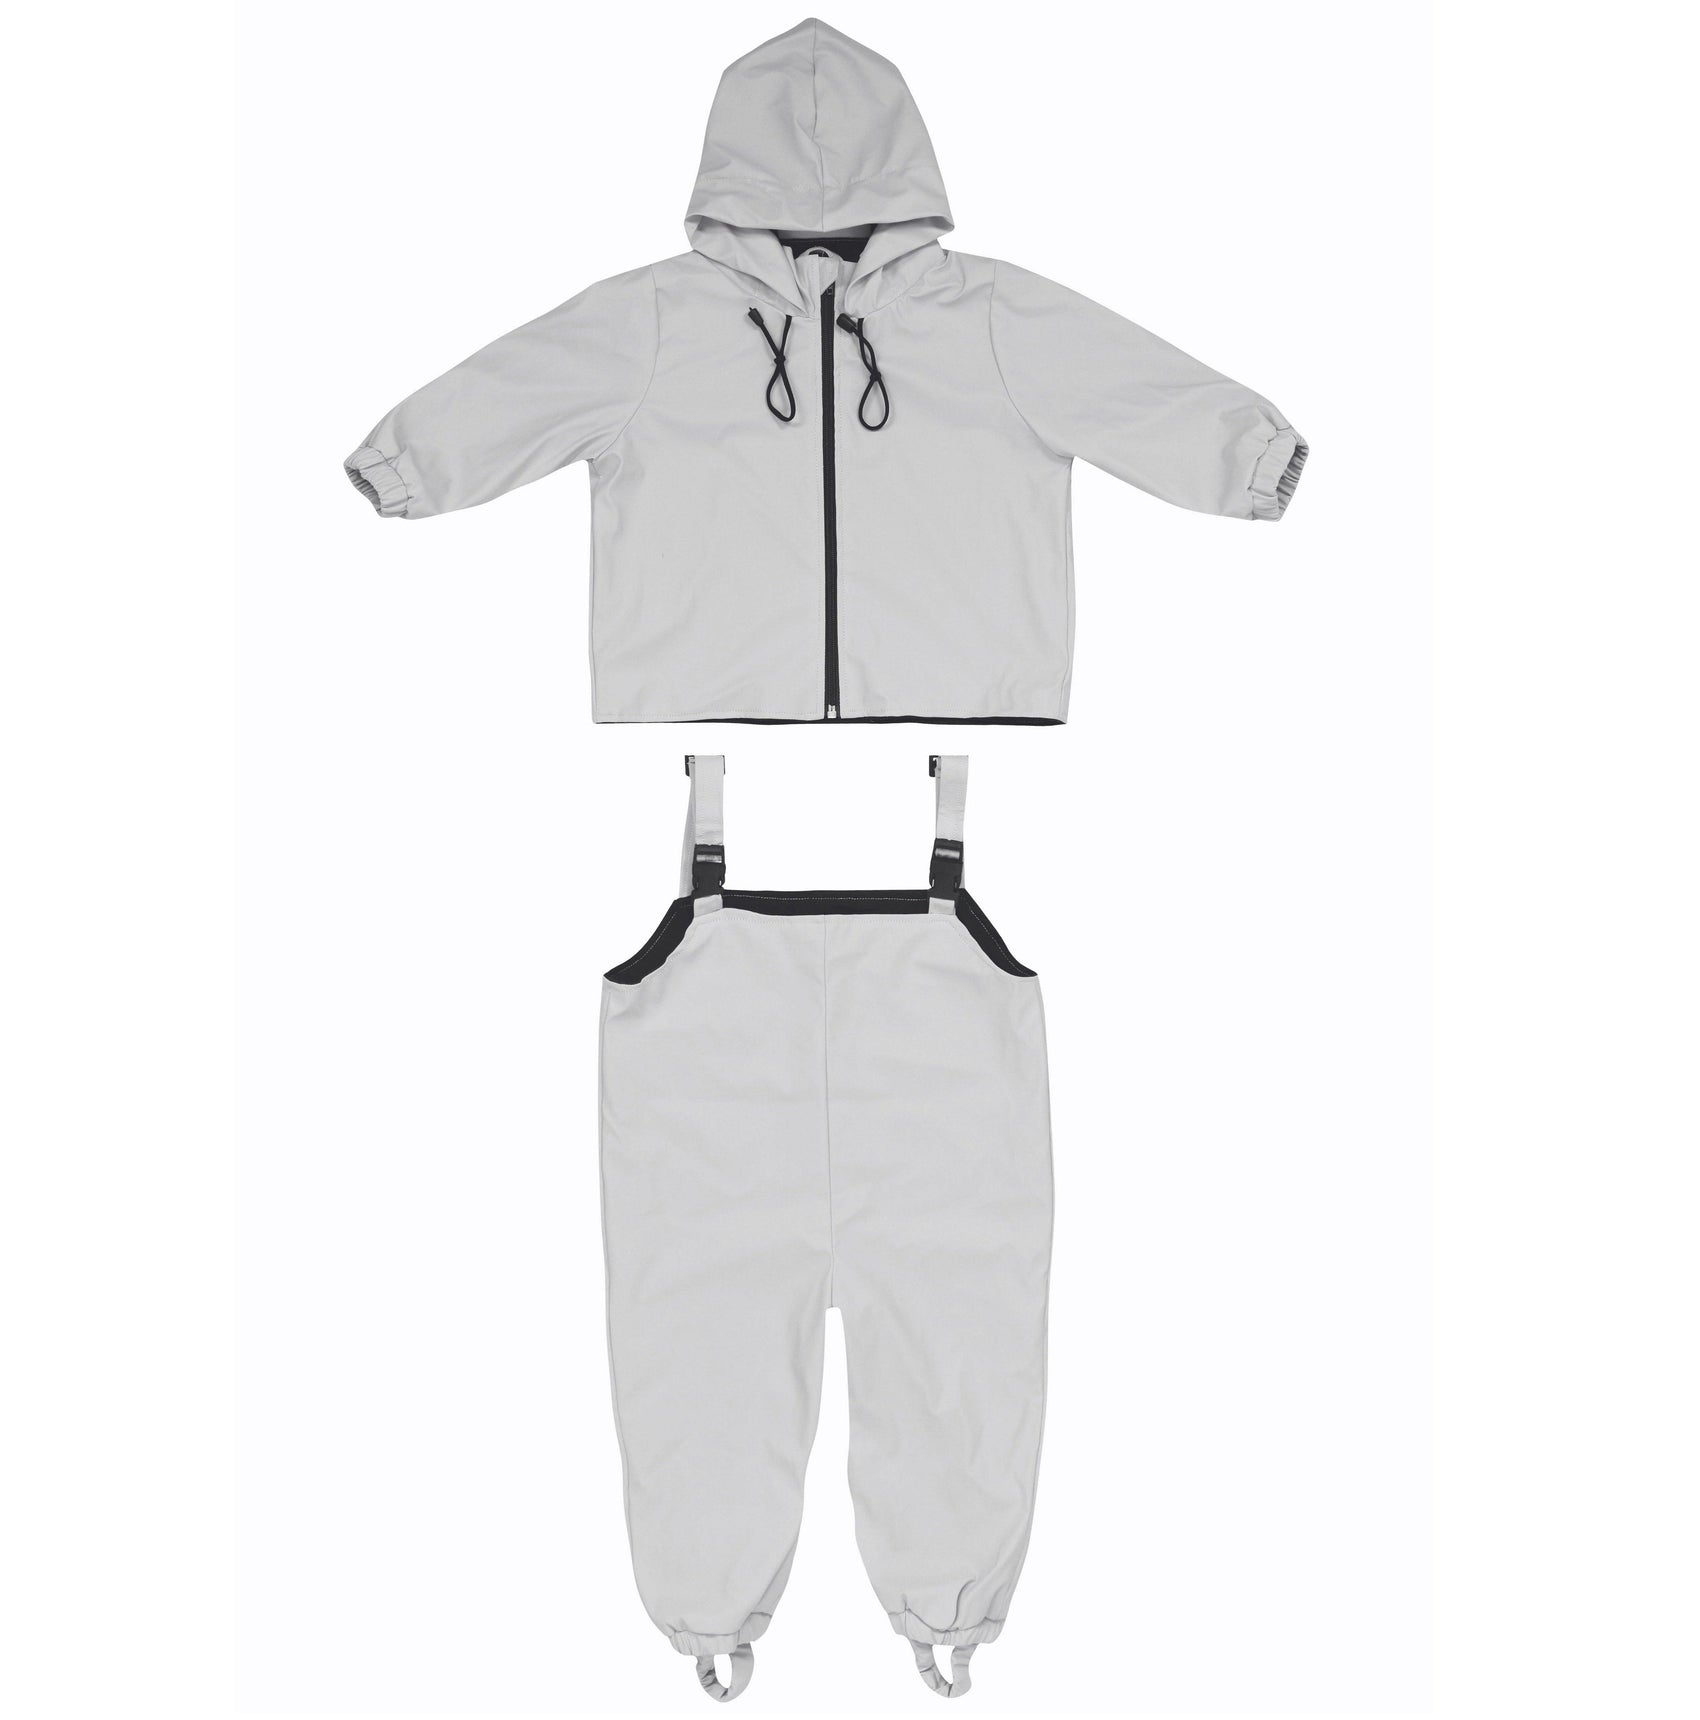 Waterproof Baby/Kid Clothing Set - Silver